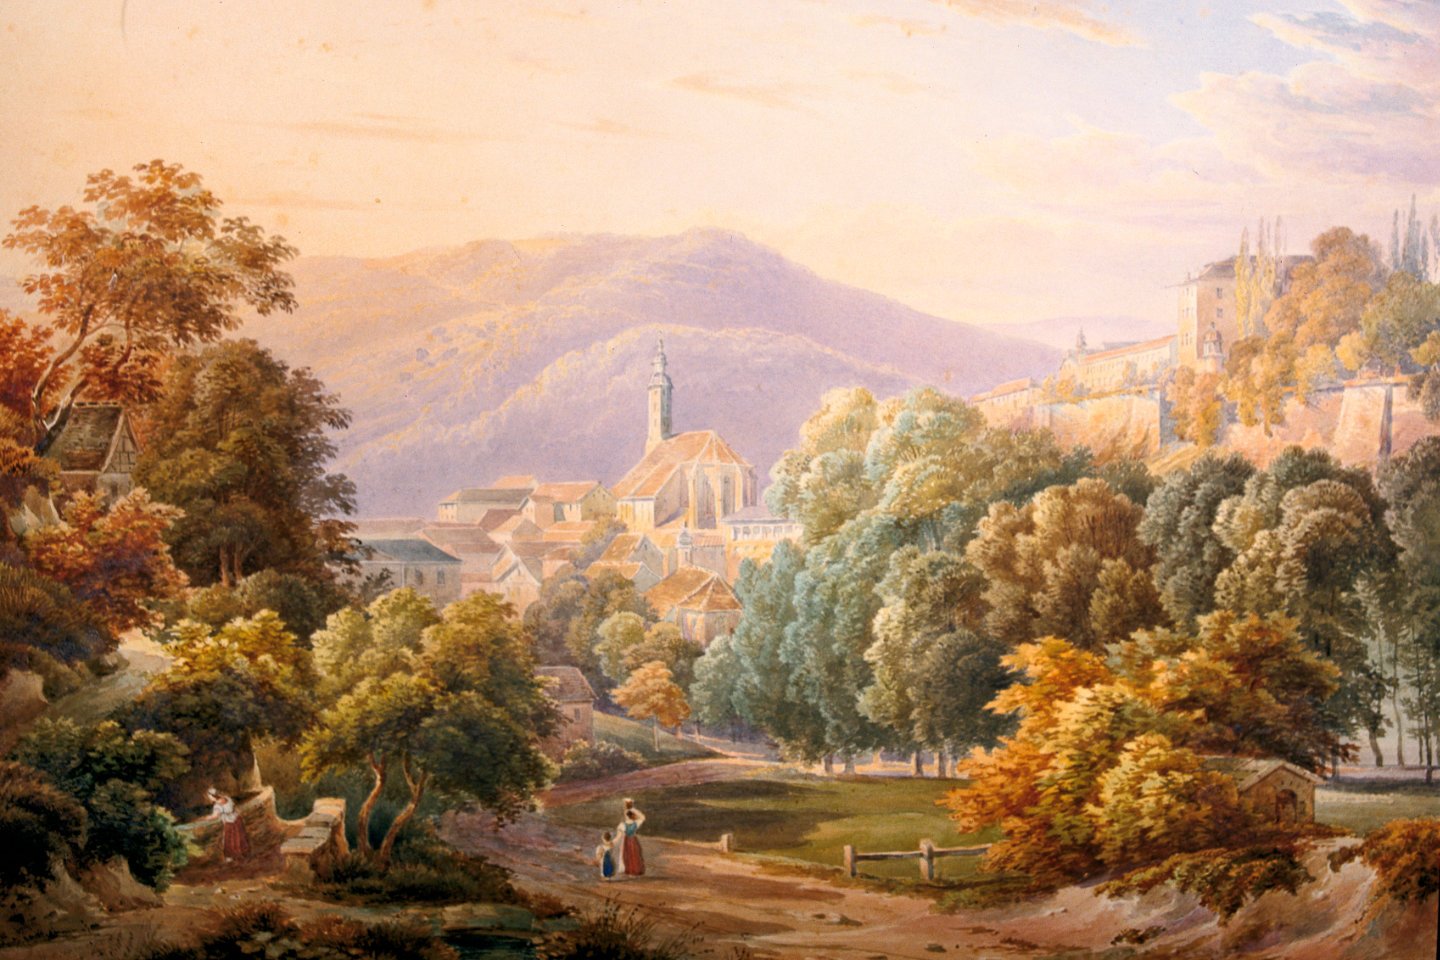 Gemälde: Malerisches Ausblick mit Blick auf eine volle, blühende Bäume. Ein Kirchturm ist ebenfalls zu sehen